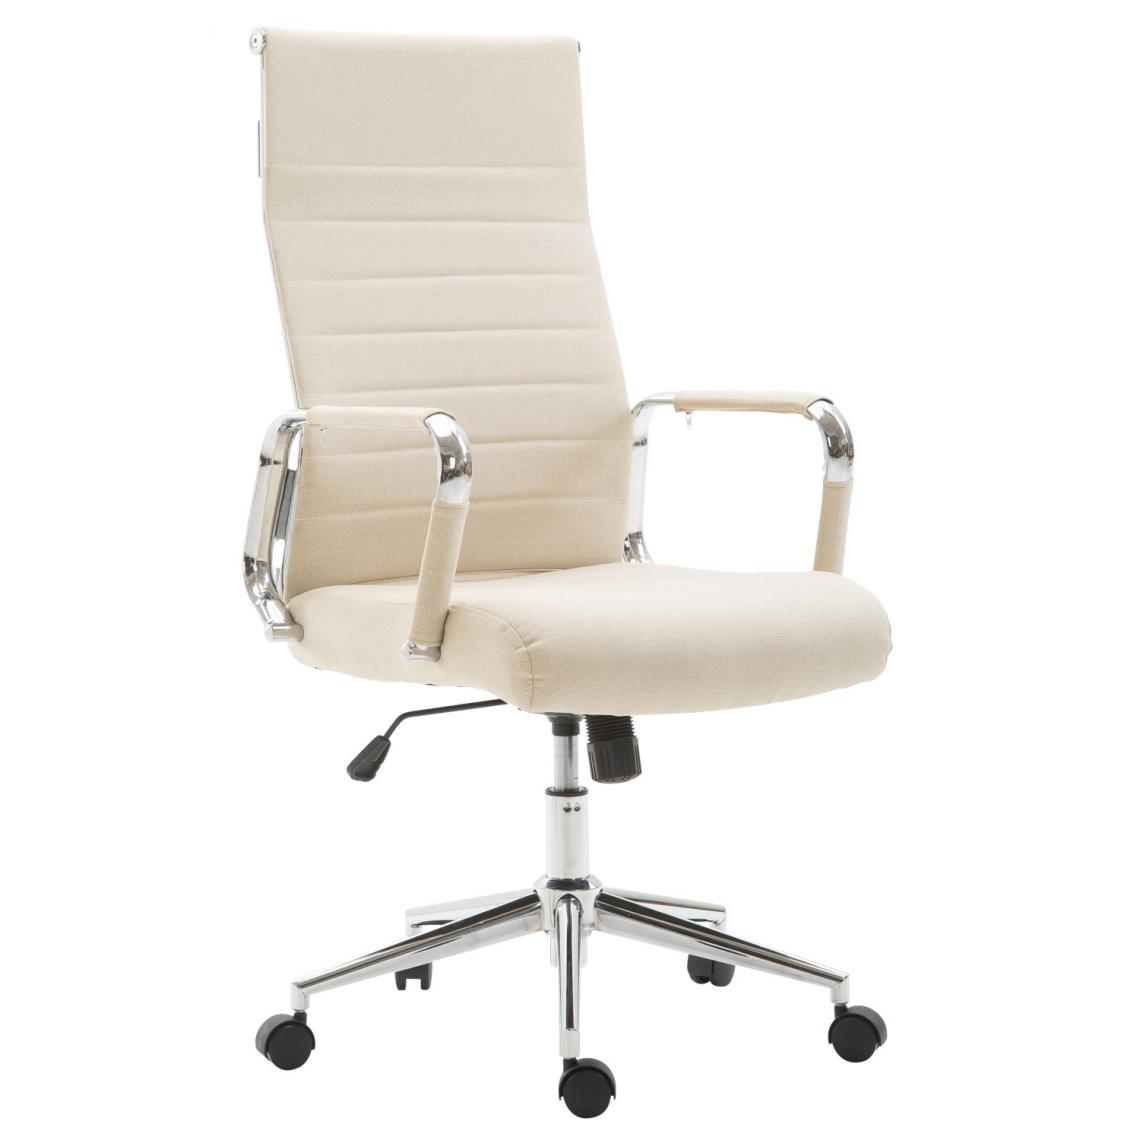 Icaverne - Splendide Chaise de bureau en tissu famille Bissau couleur crème - Chaises